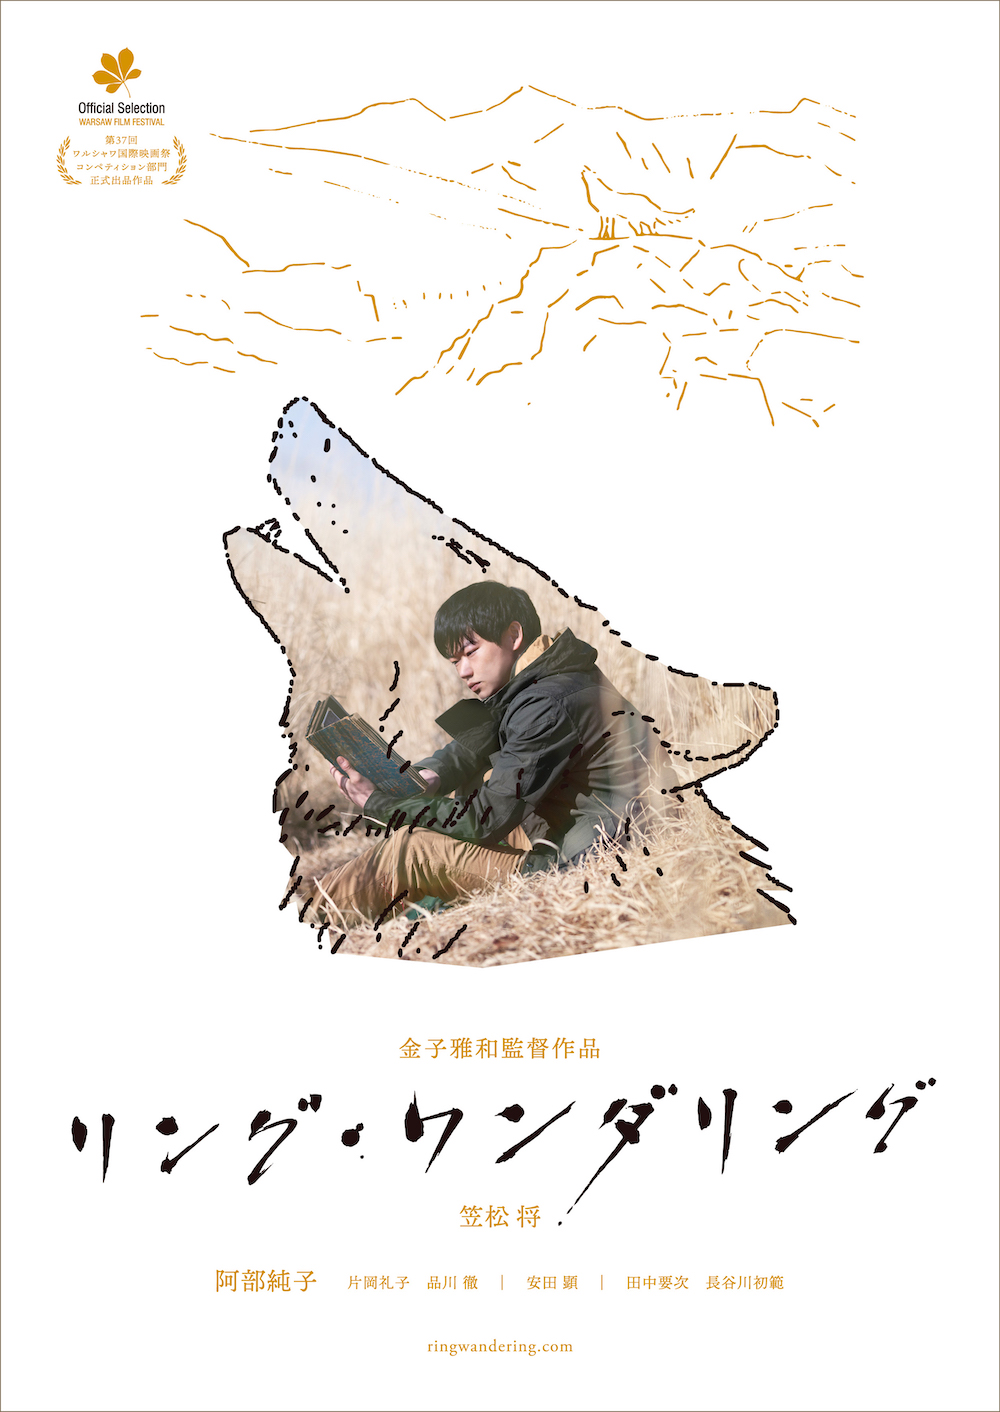 Ring Wandering film - Masakazu Kaneko - poster